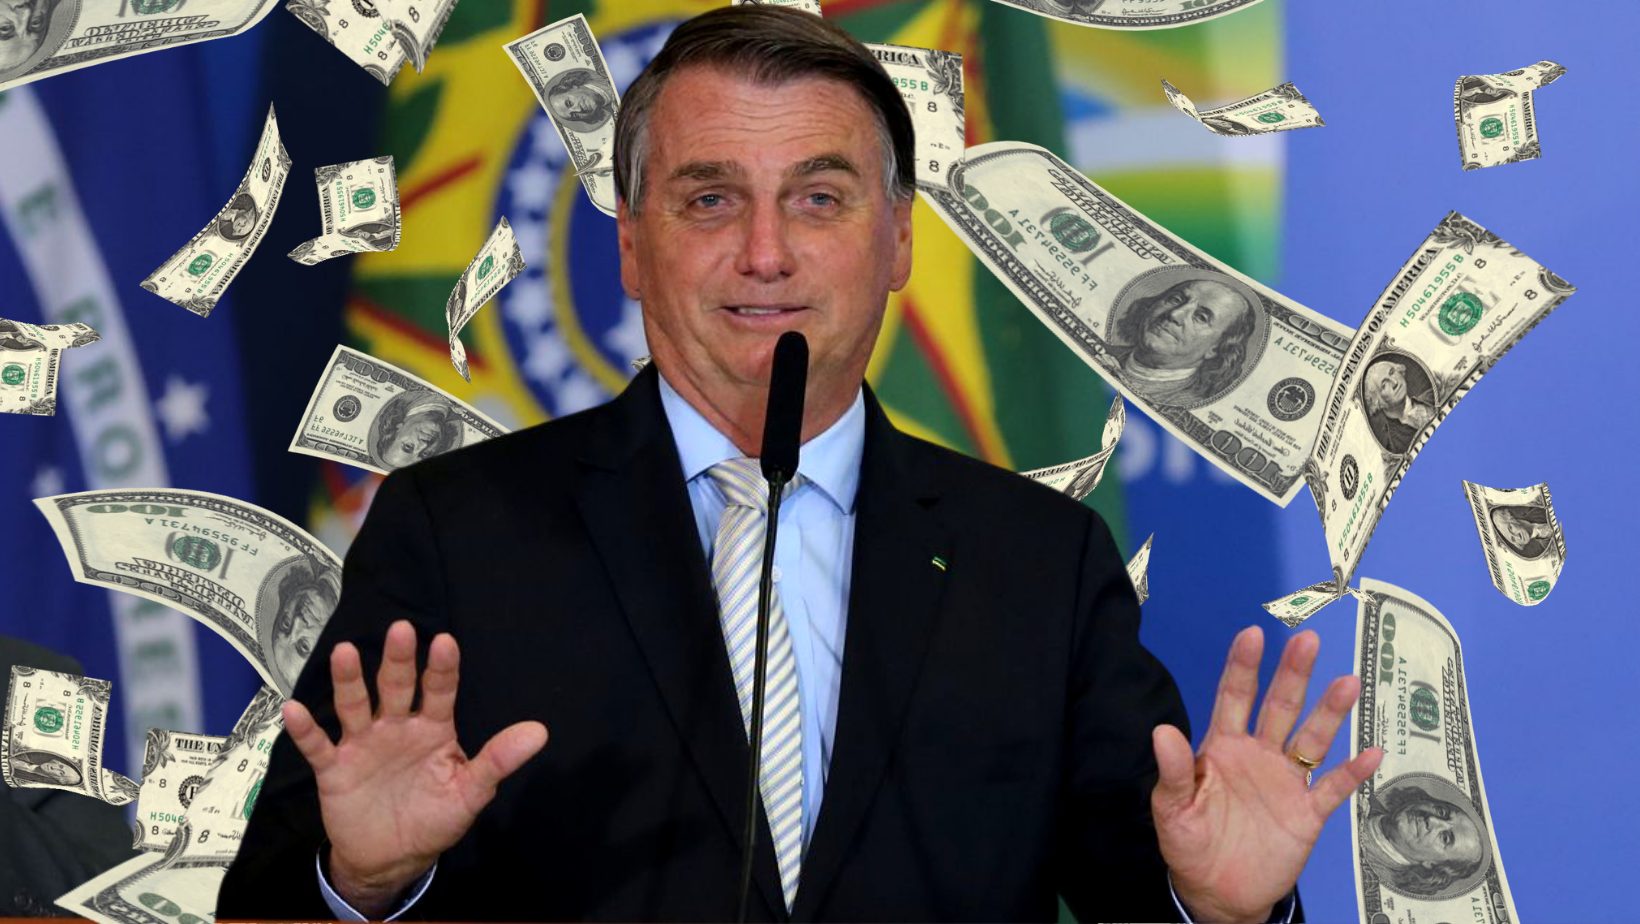 Eleições 2022: patrimônio de BOLSONARO poderia pagar quantos benefícios?